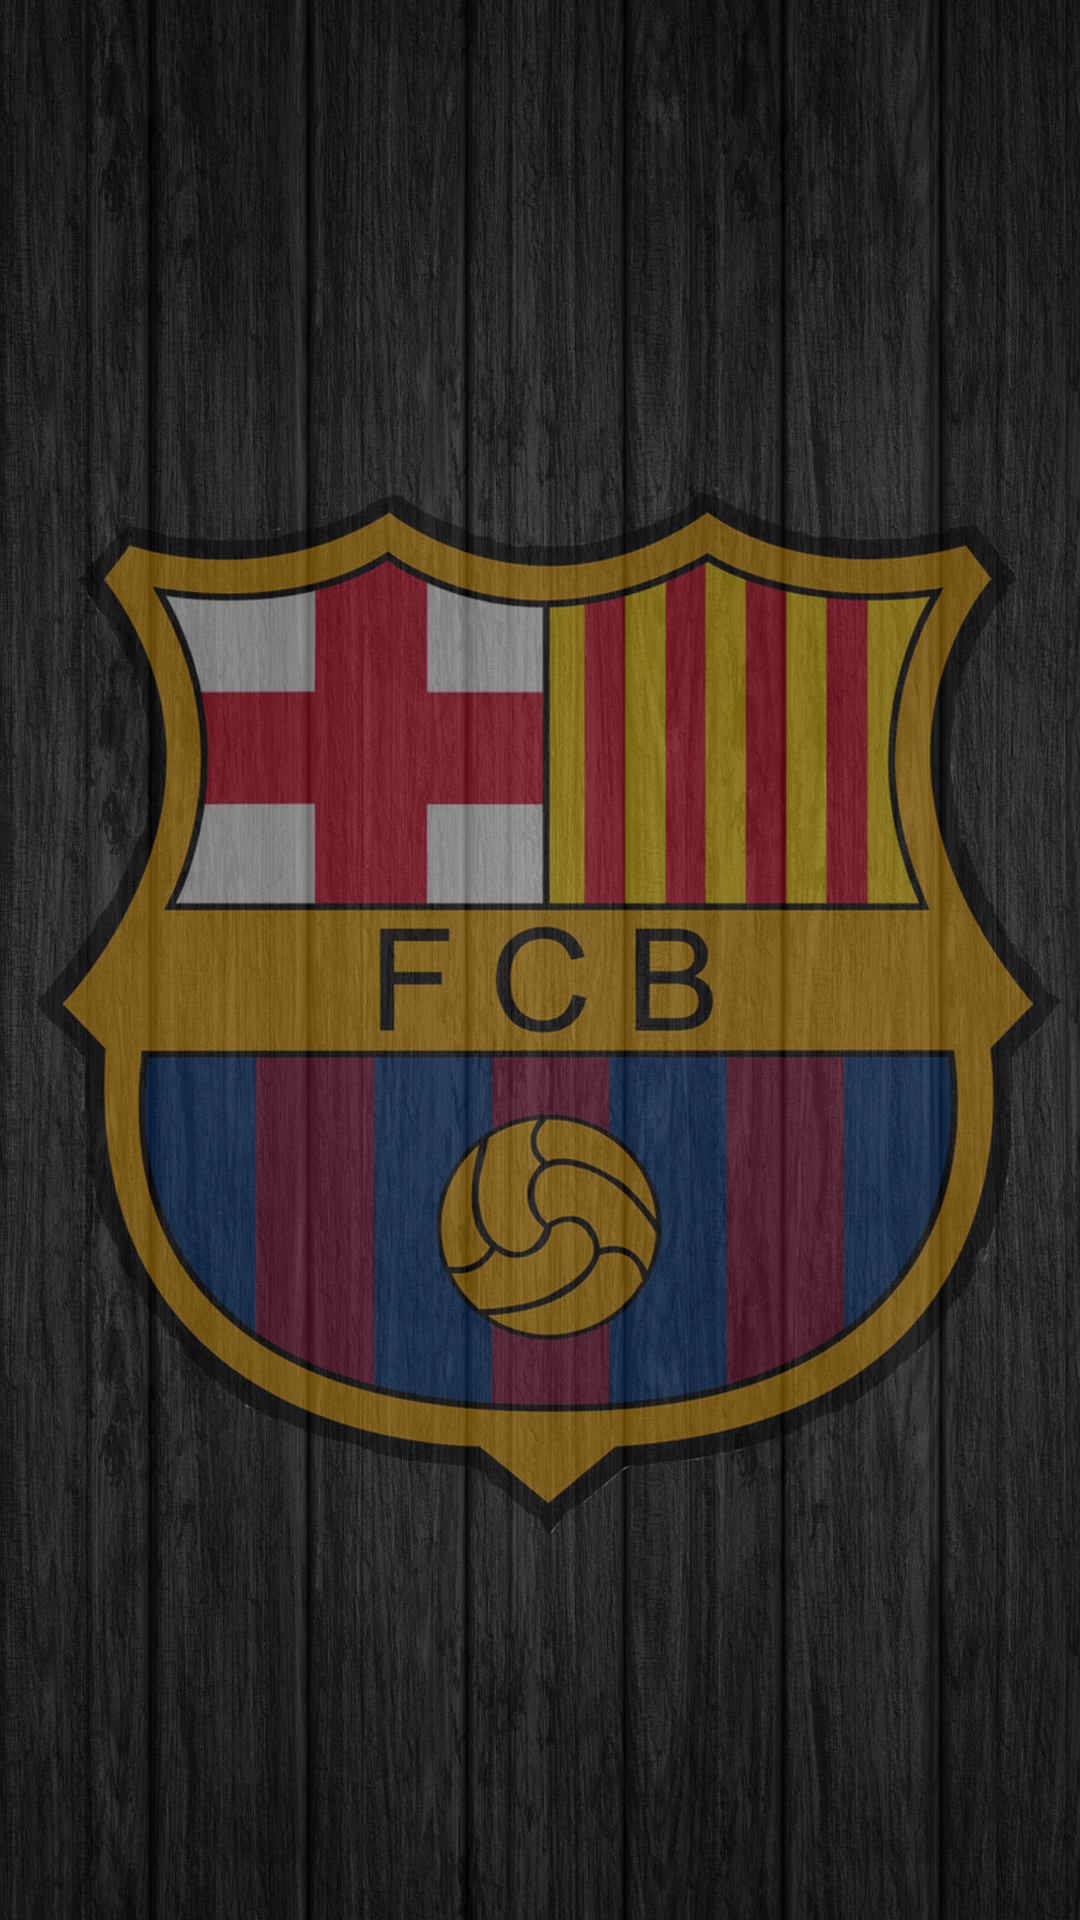 barcelona wallpaper iphone,emblem,logo,symbol,font,textile